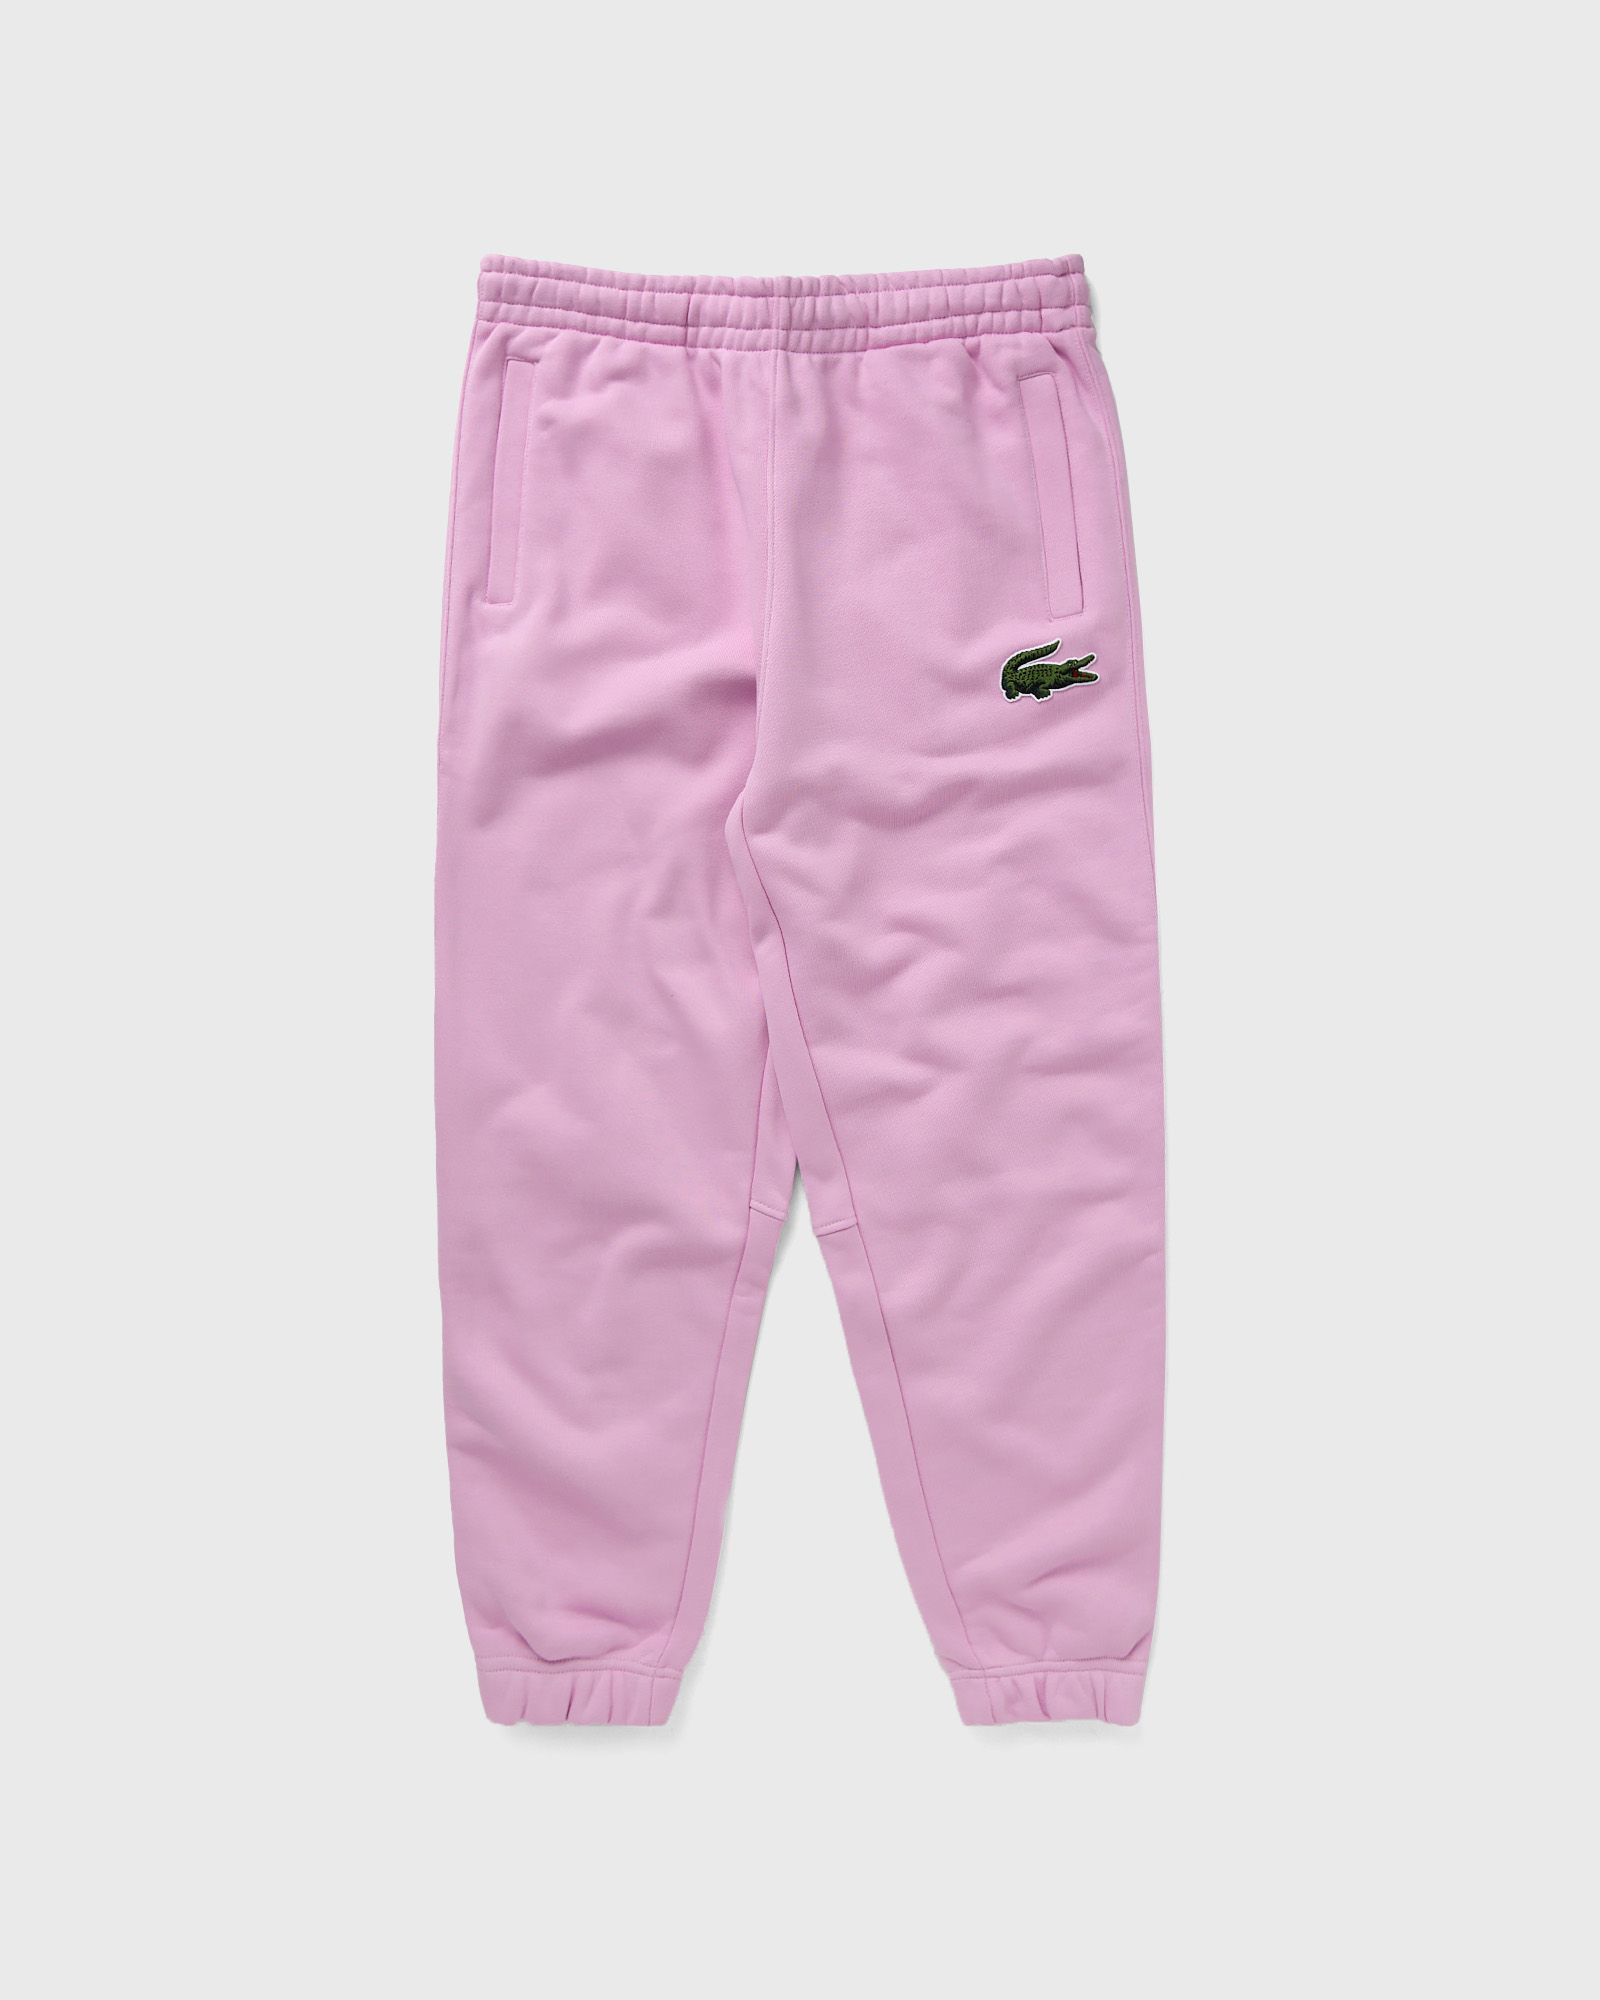 Lacoste - sweatpants men sweatpants pink in größe:xl